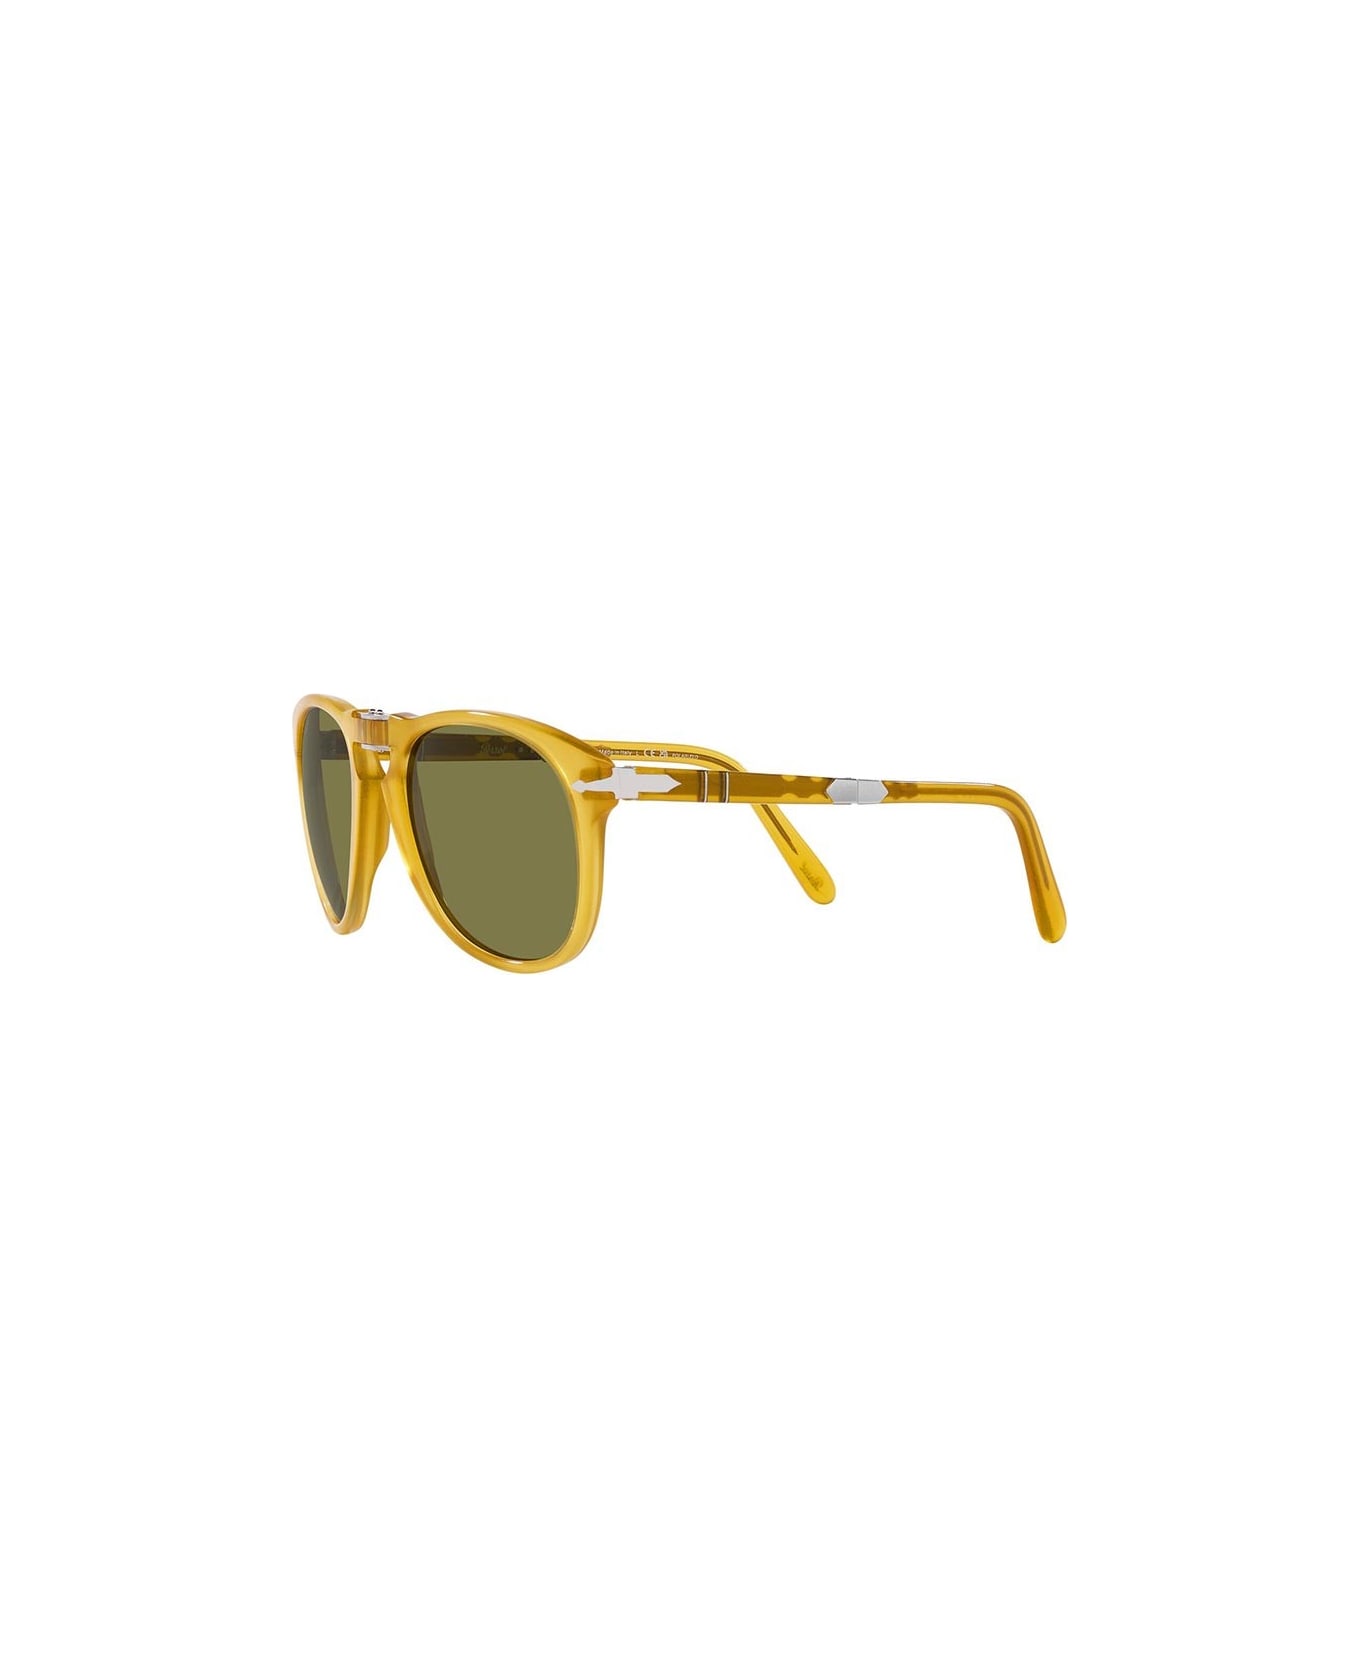 Persol Sunglasses - Giallo/Verde